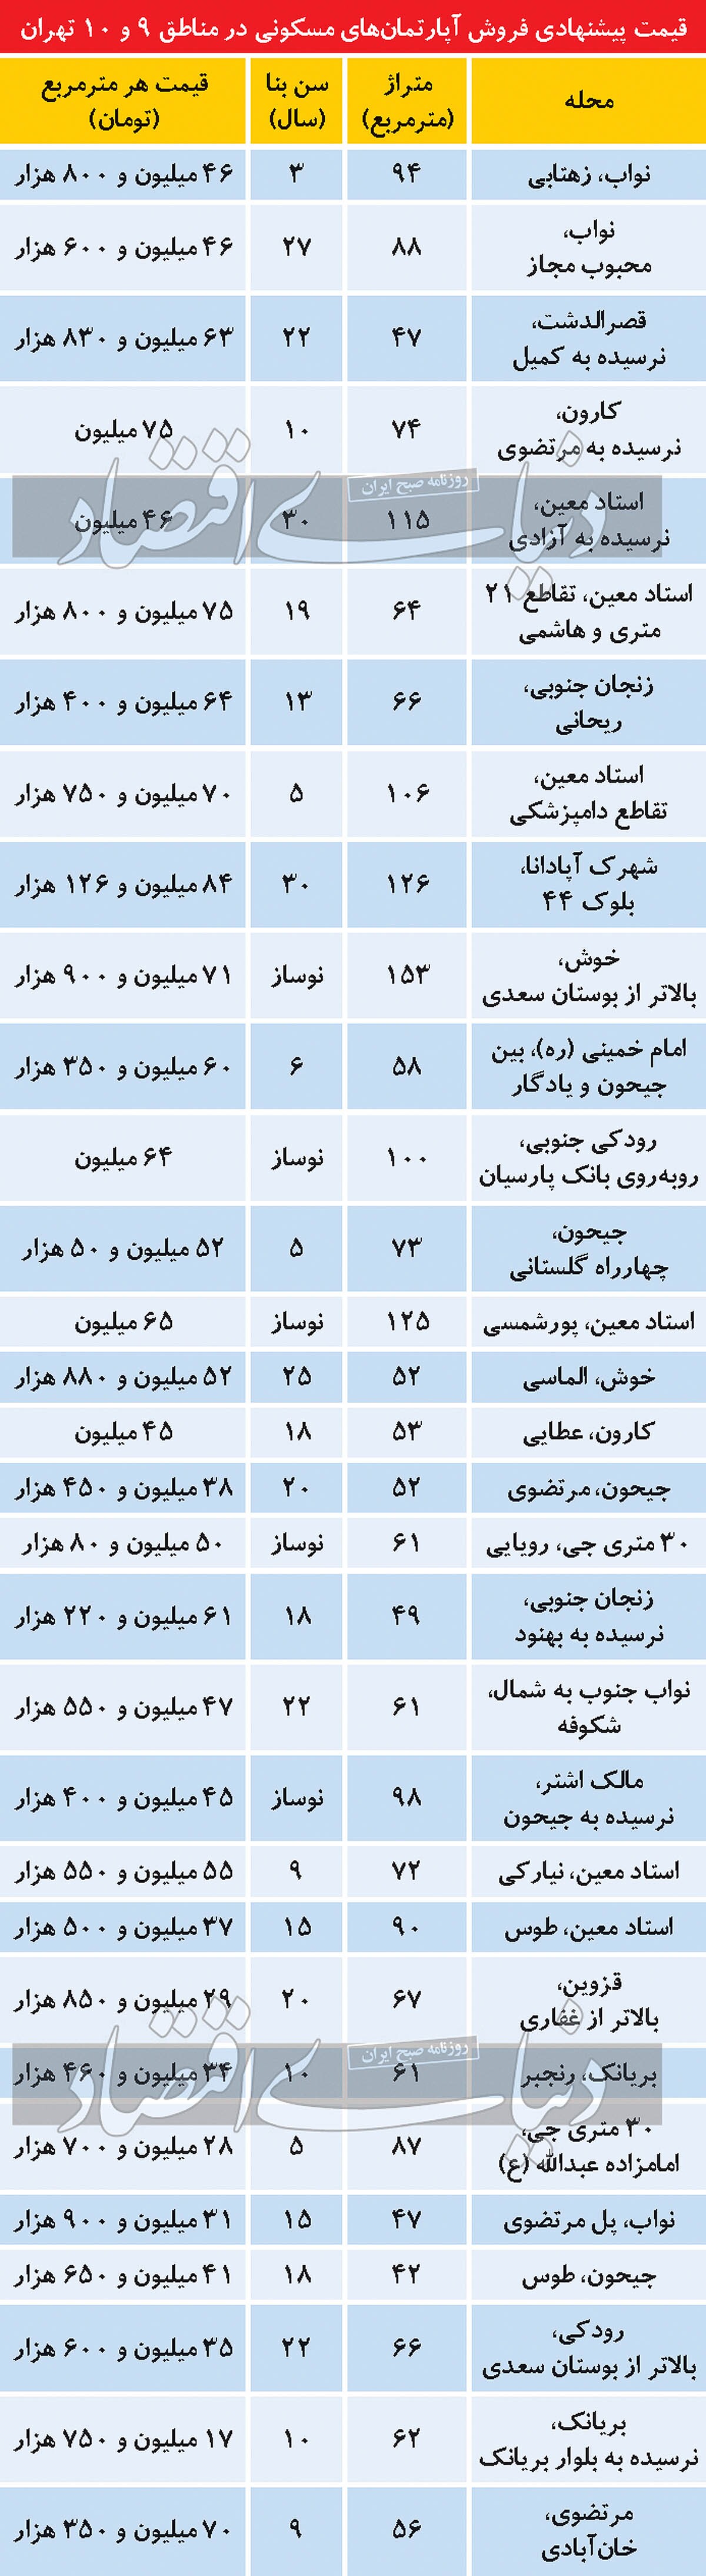 وضعیت بازار مسکن در مناطق ۹ و ۱۰ تهران